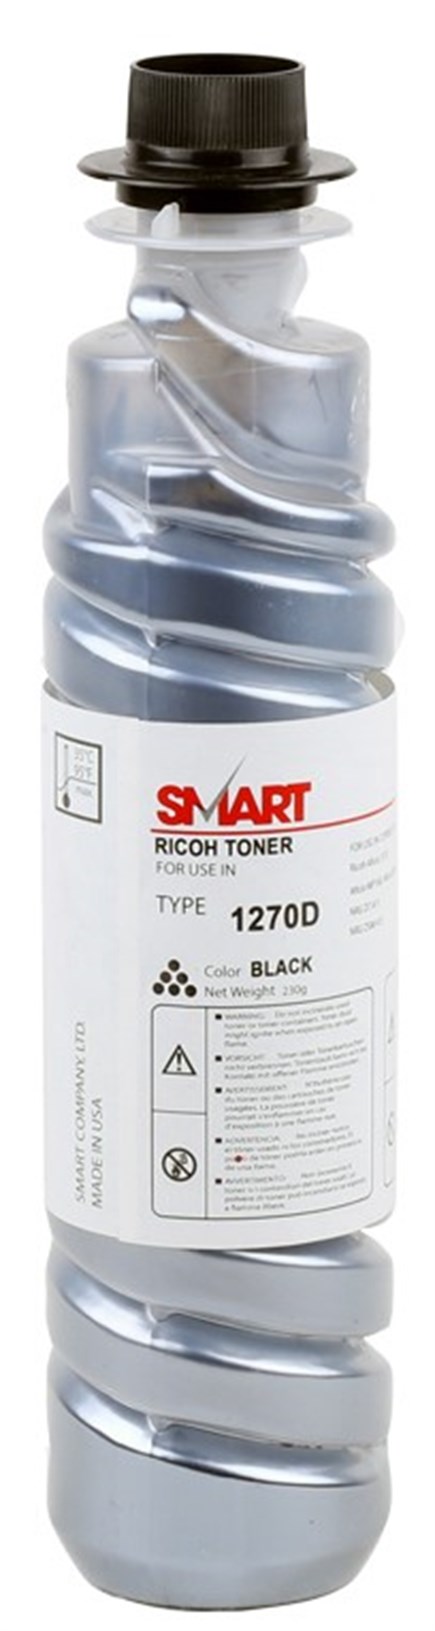 Ricoh 1270D Smart Toner Aficio 1515 MP-160-161-171 / MP-201